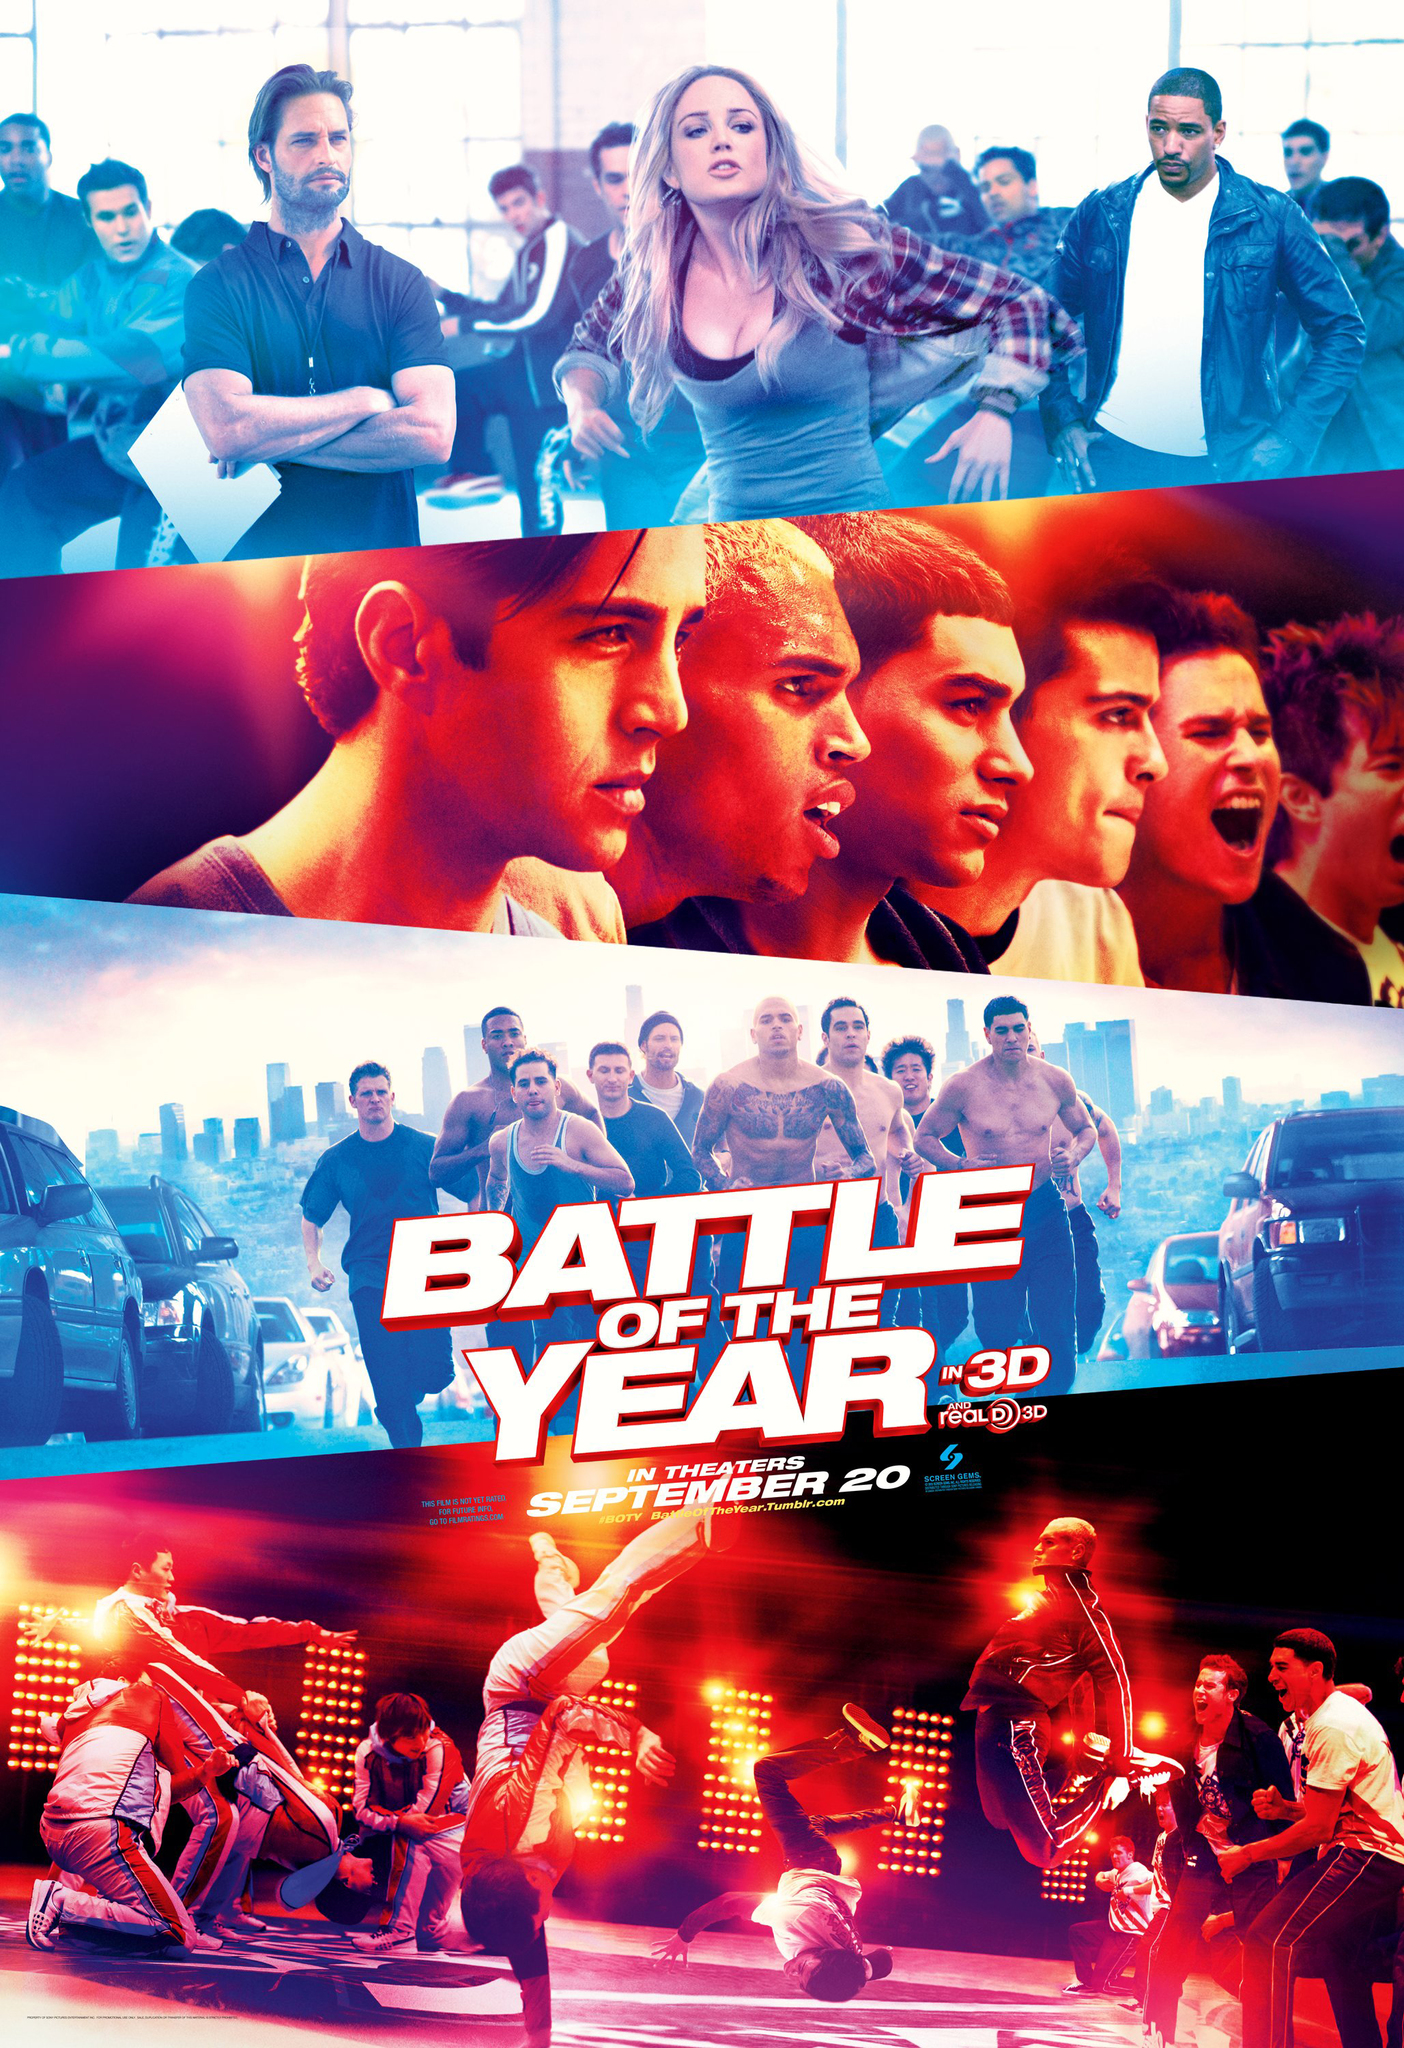 ดูหนังออนไลน์ฟรี Battle of the Year (2013) สมรภูมิเทพ สเต็ปทะลุเดือด